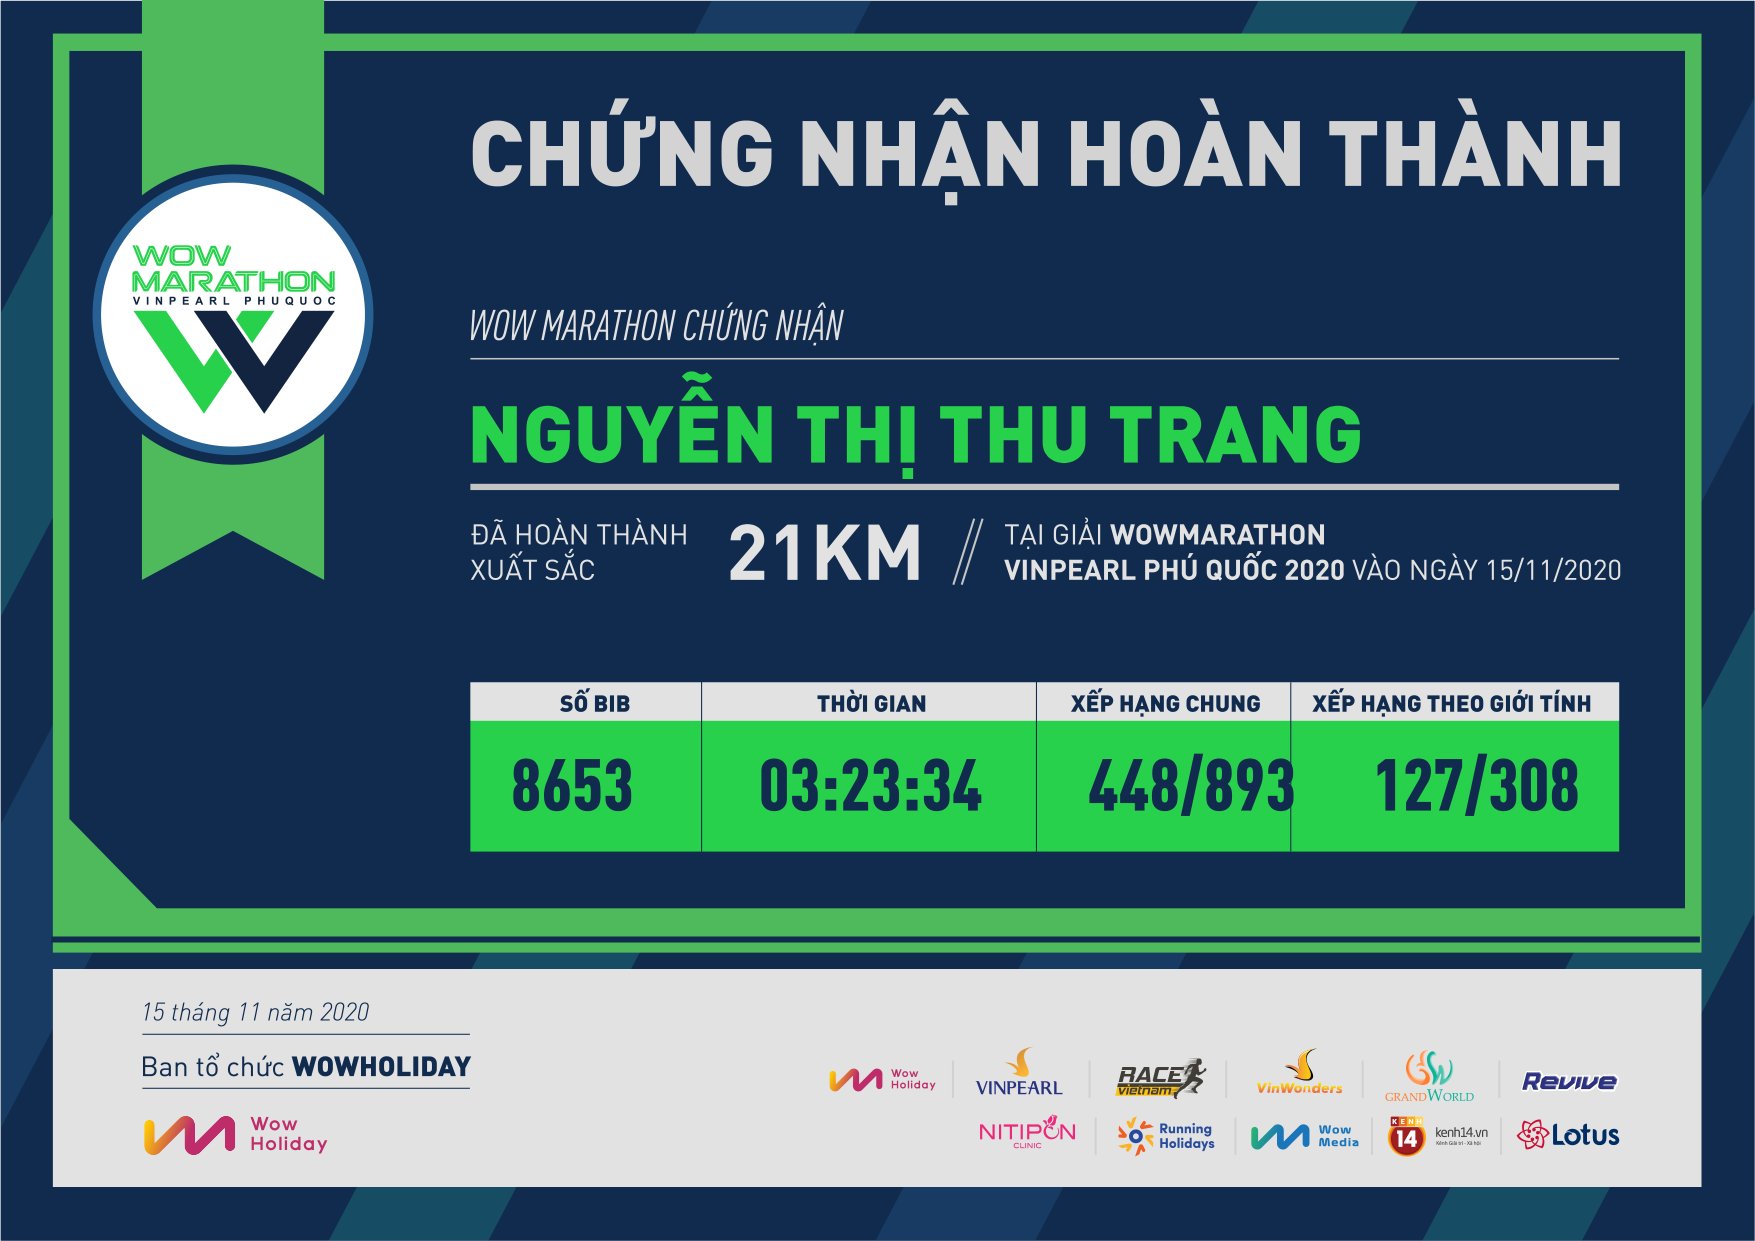 8653 - Nguyễn Thị Thu Trang